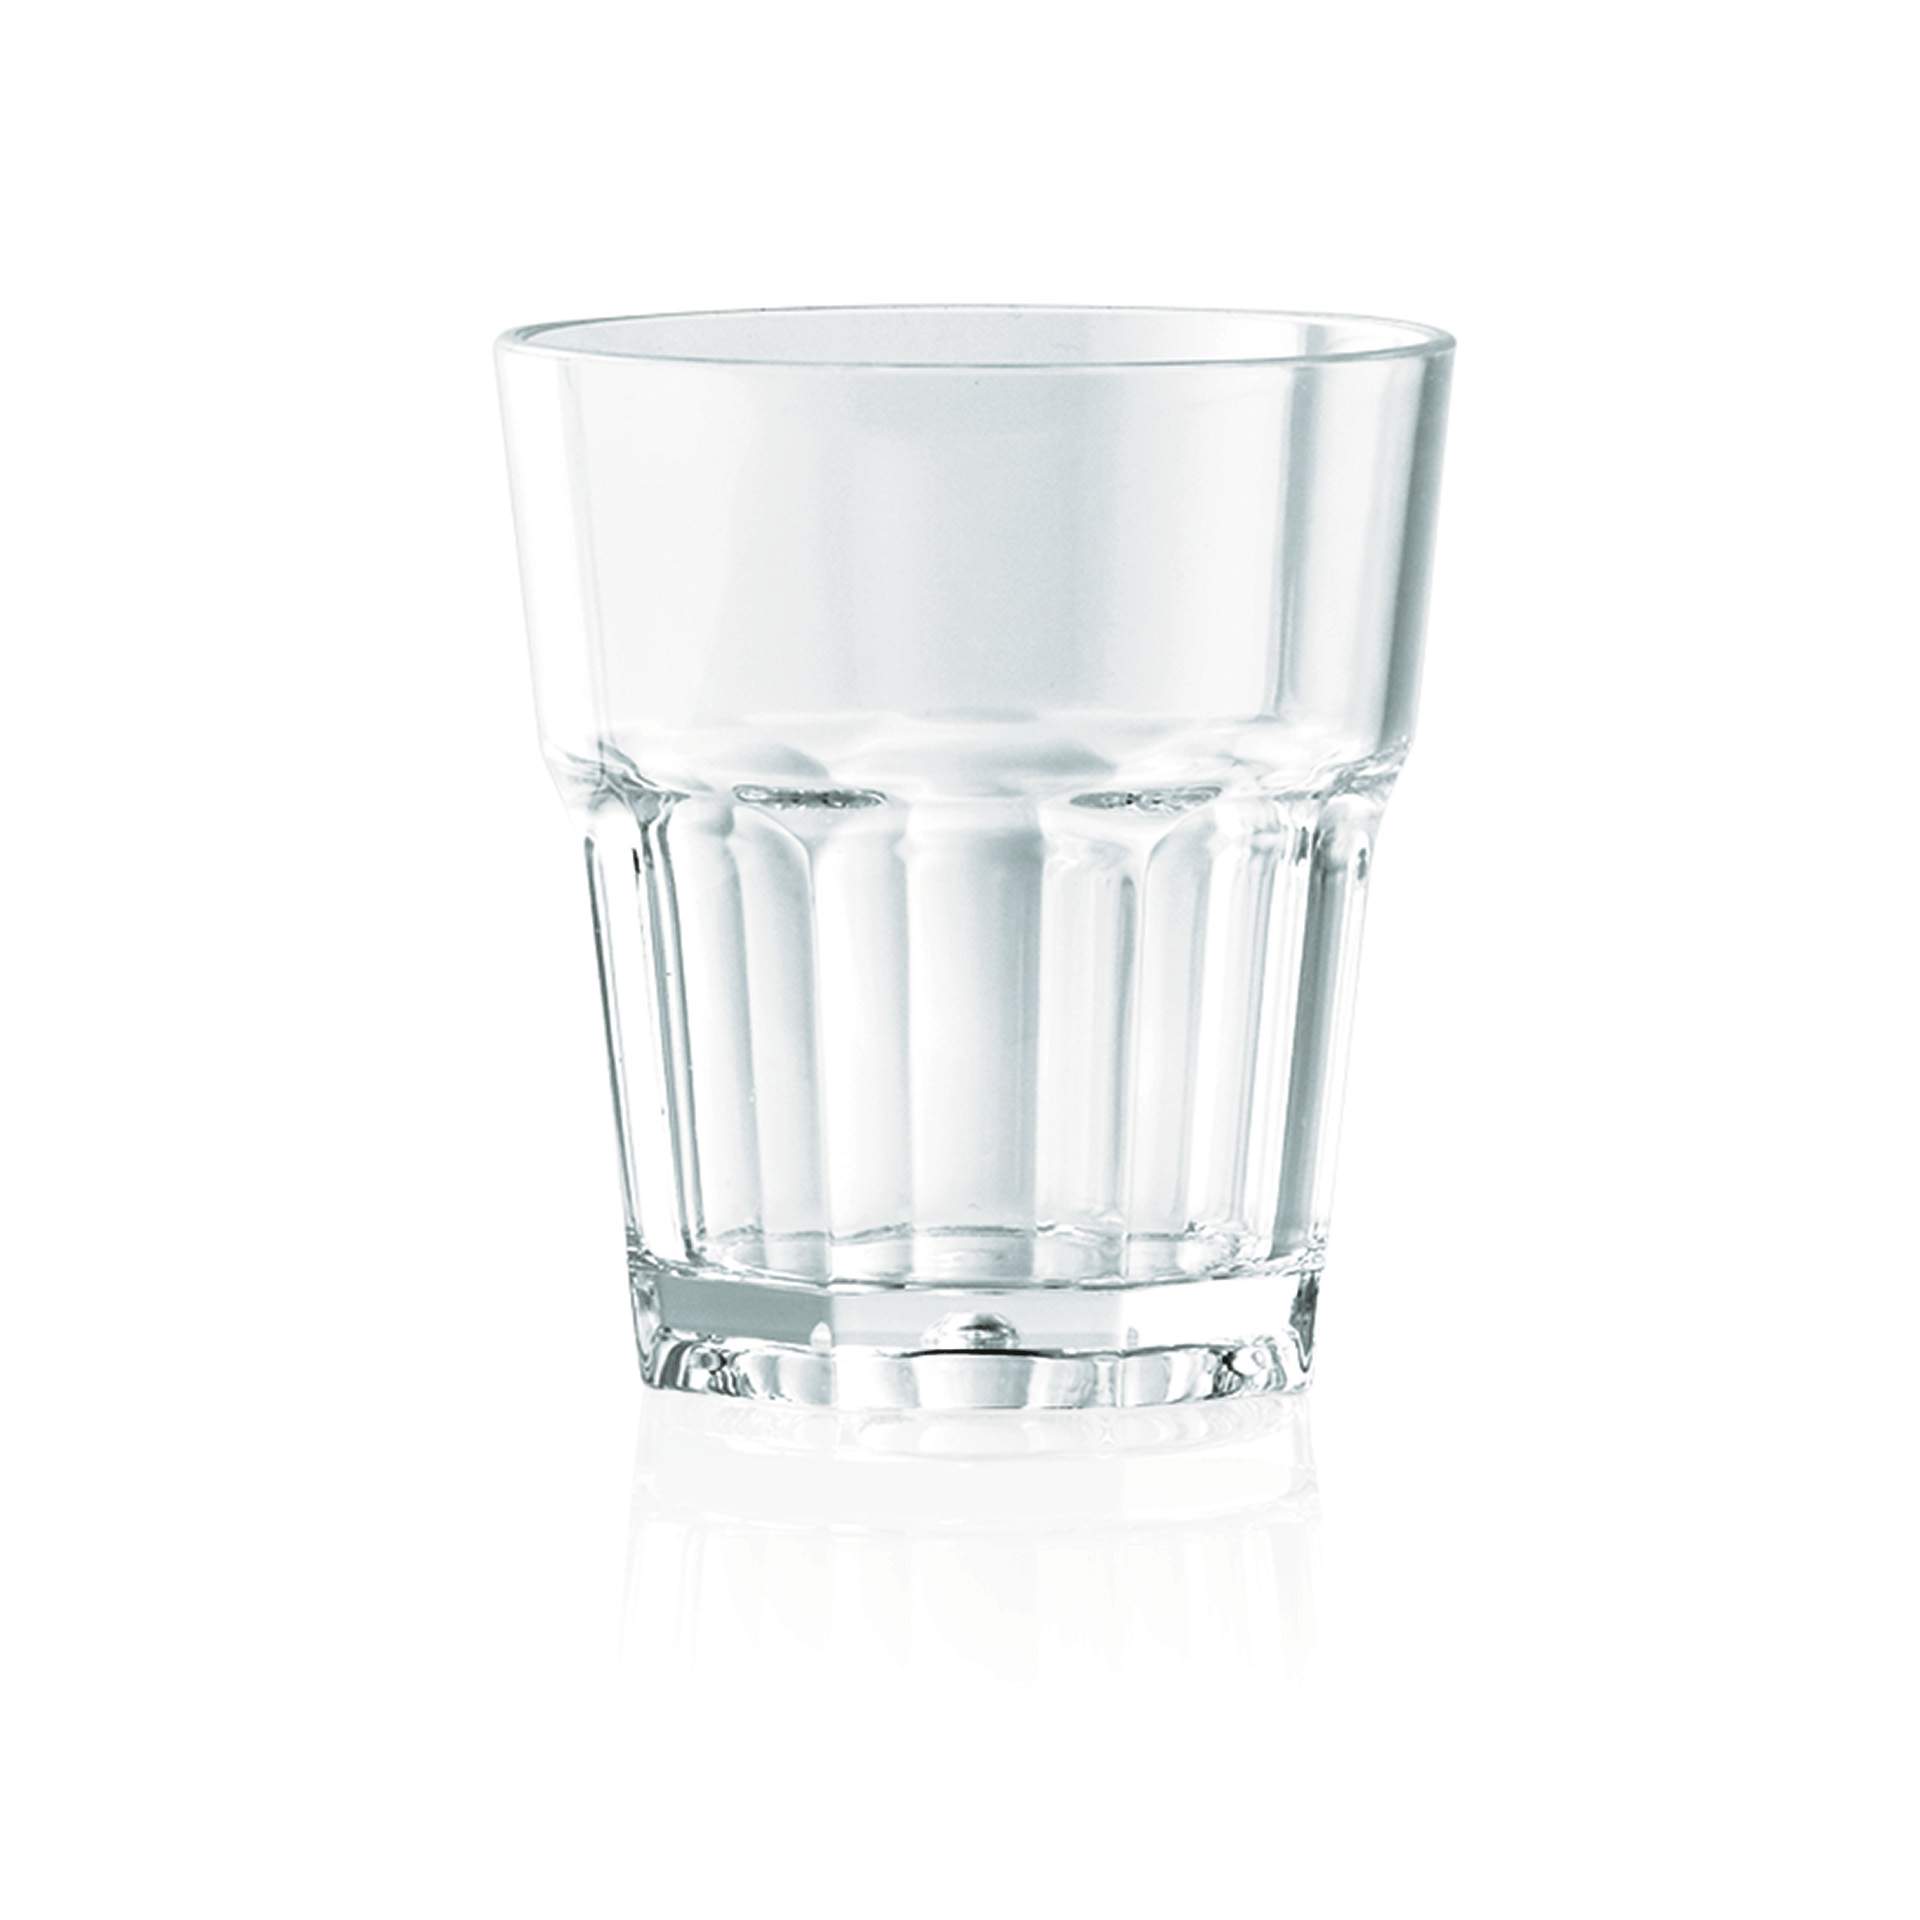 Saftglas - Serie Pool - Abm. 7,2 cm - Ø oben / unten 6,4 / 4,6 cm - Inhalt 0,12 l - Polycarbonat - premium Qualität - 9450012-A